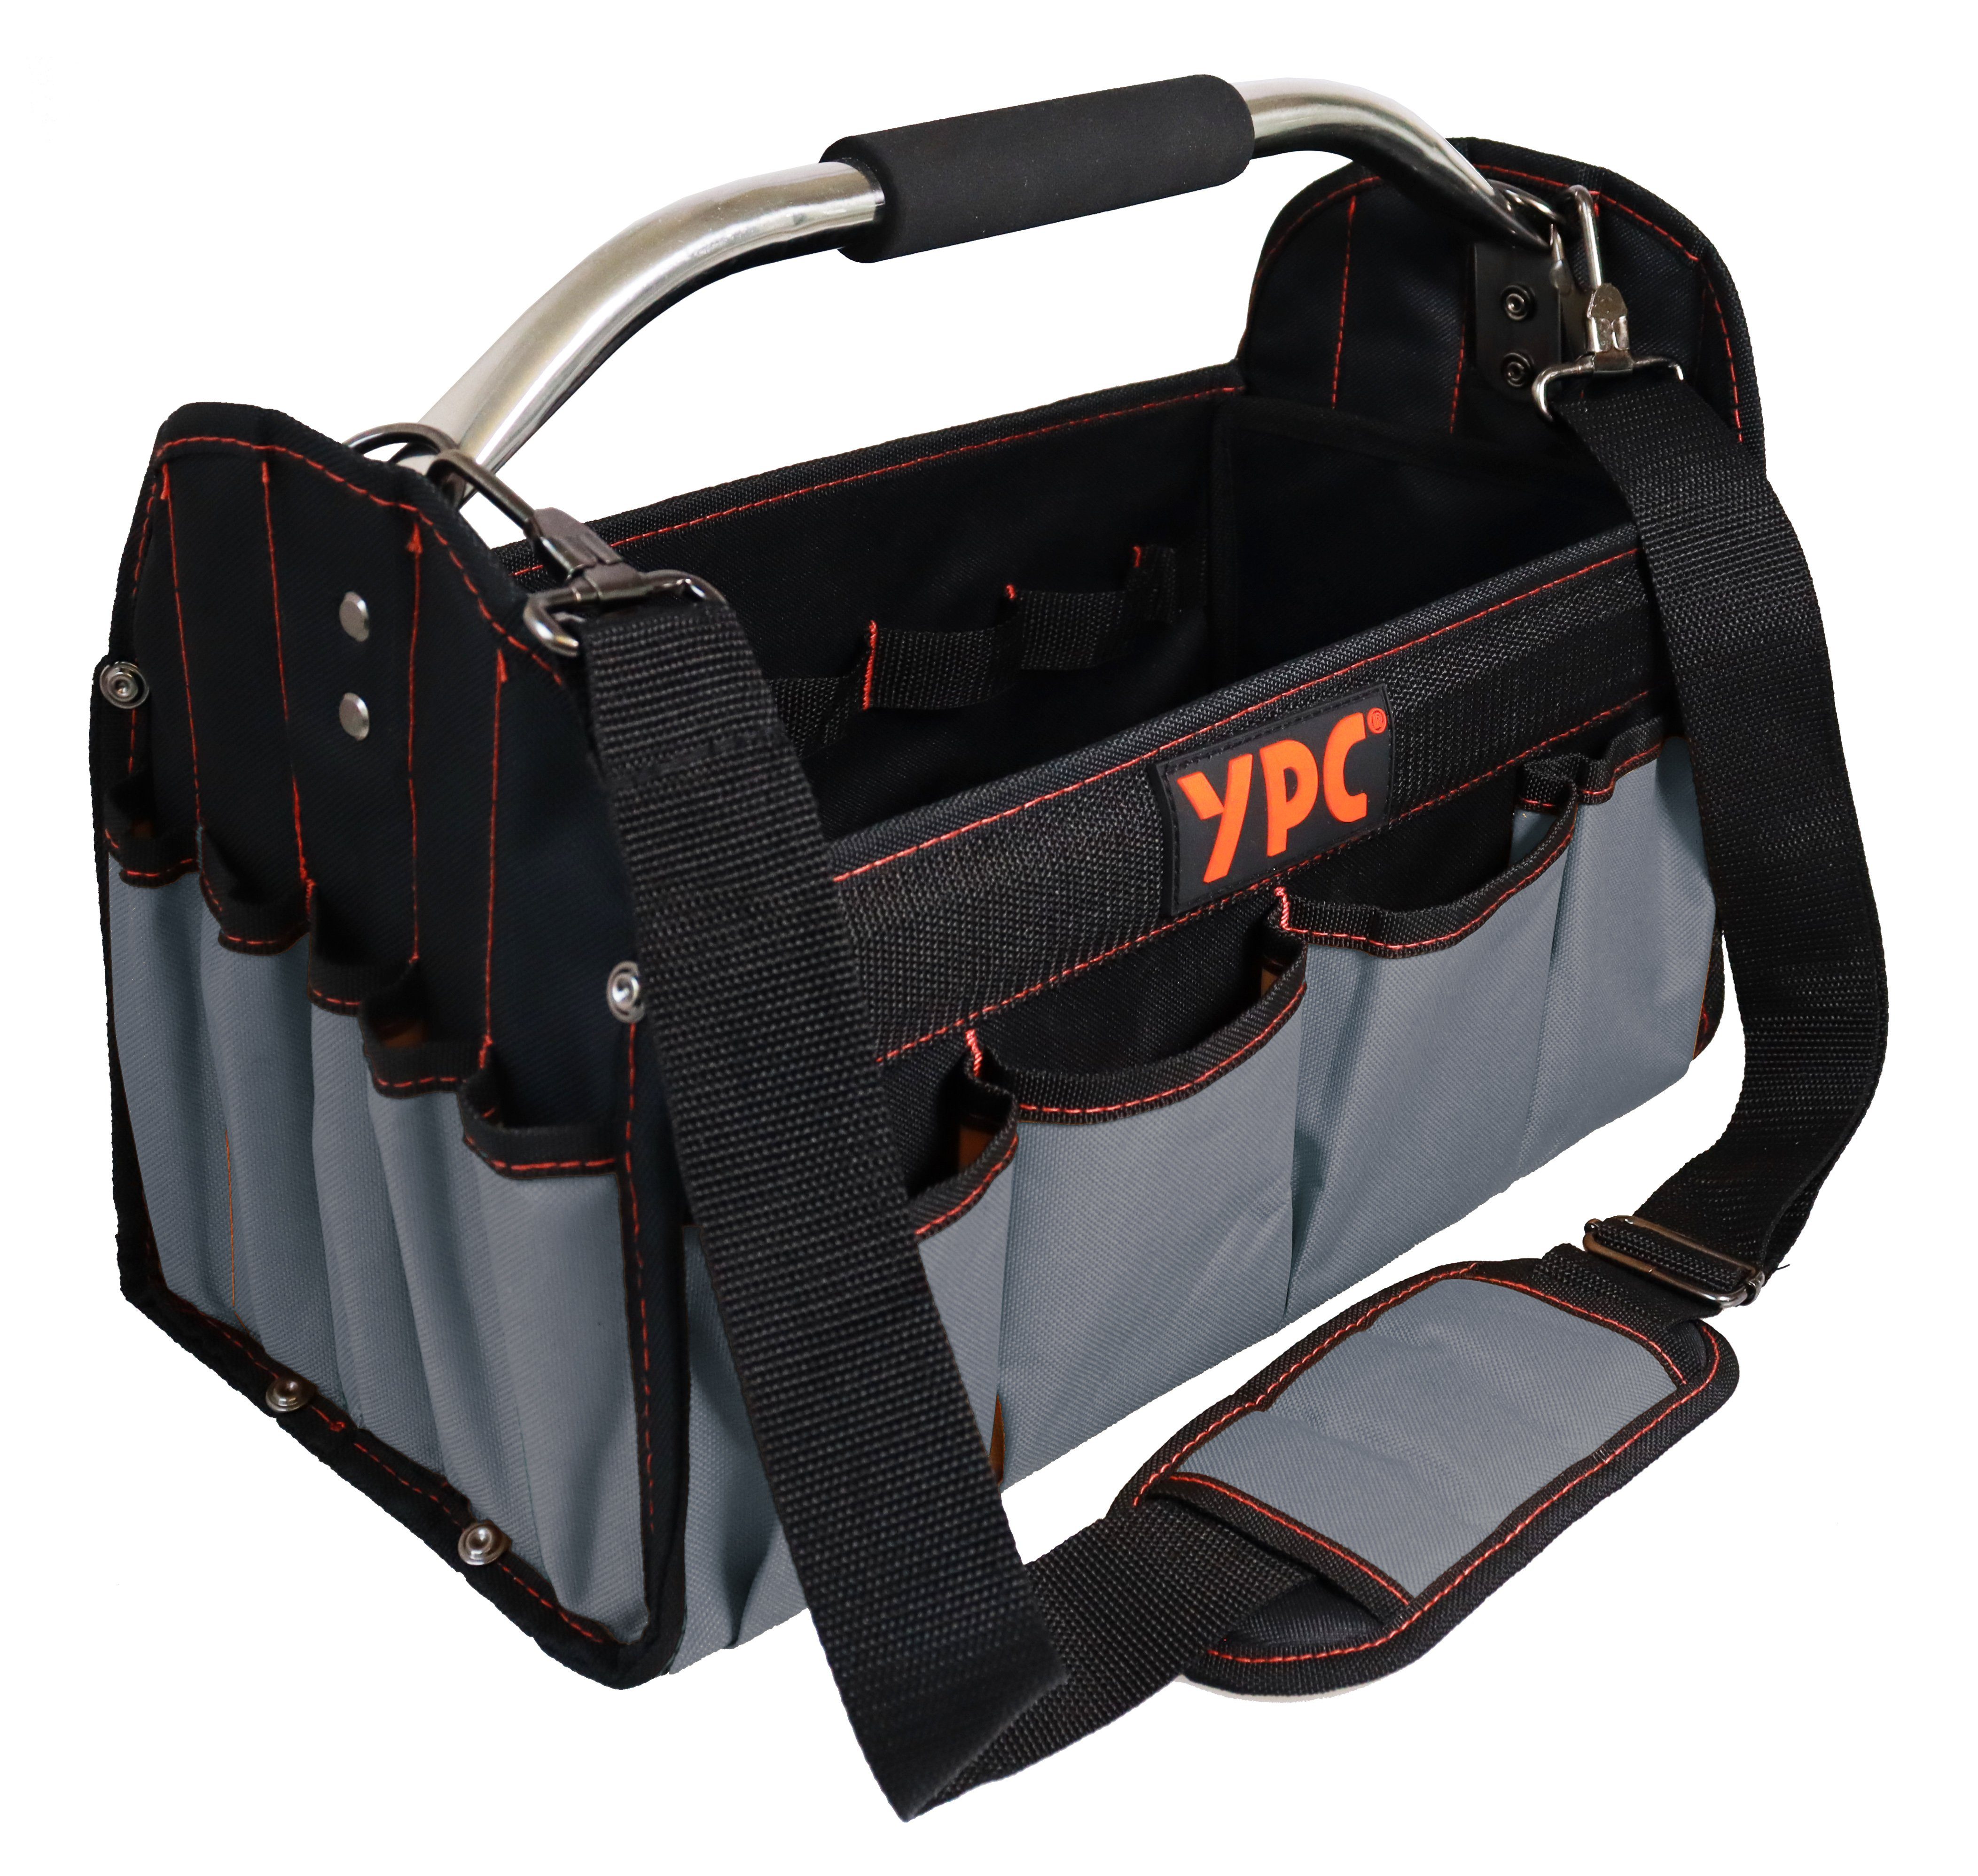 YPC Werkzeugtasche "Carrier" Werkzeugkorb XL, offene Werkzeugtasche mit Metallgriff, 40,5x30x19,5cm, 20 kg Tragkraft, Tragetasche für Werkzeug mit Haltern, Fächern und Einschüben Grau